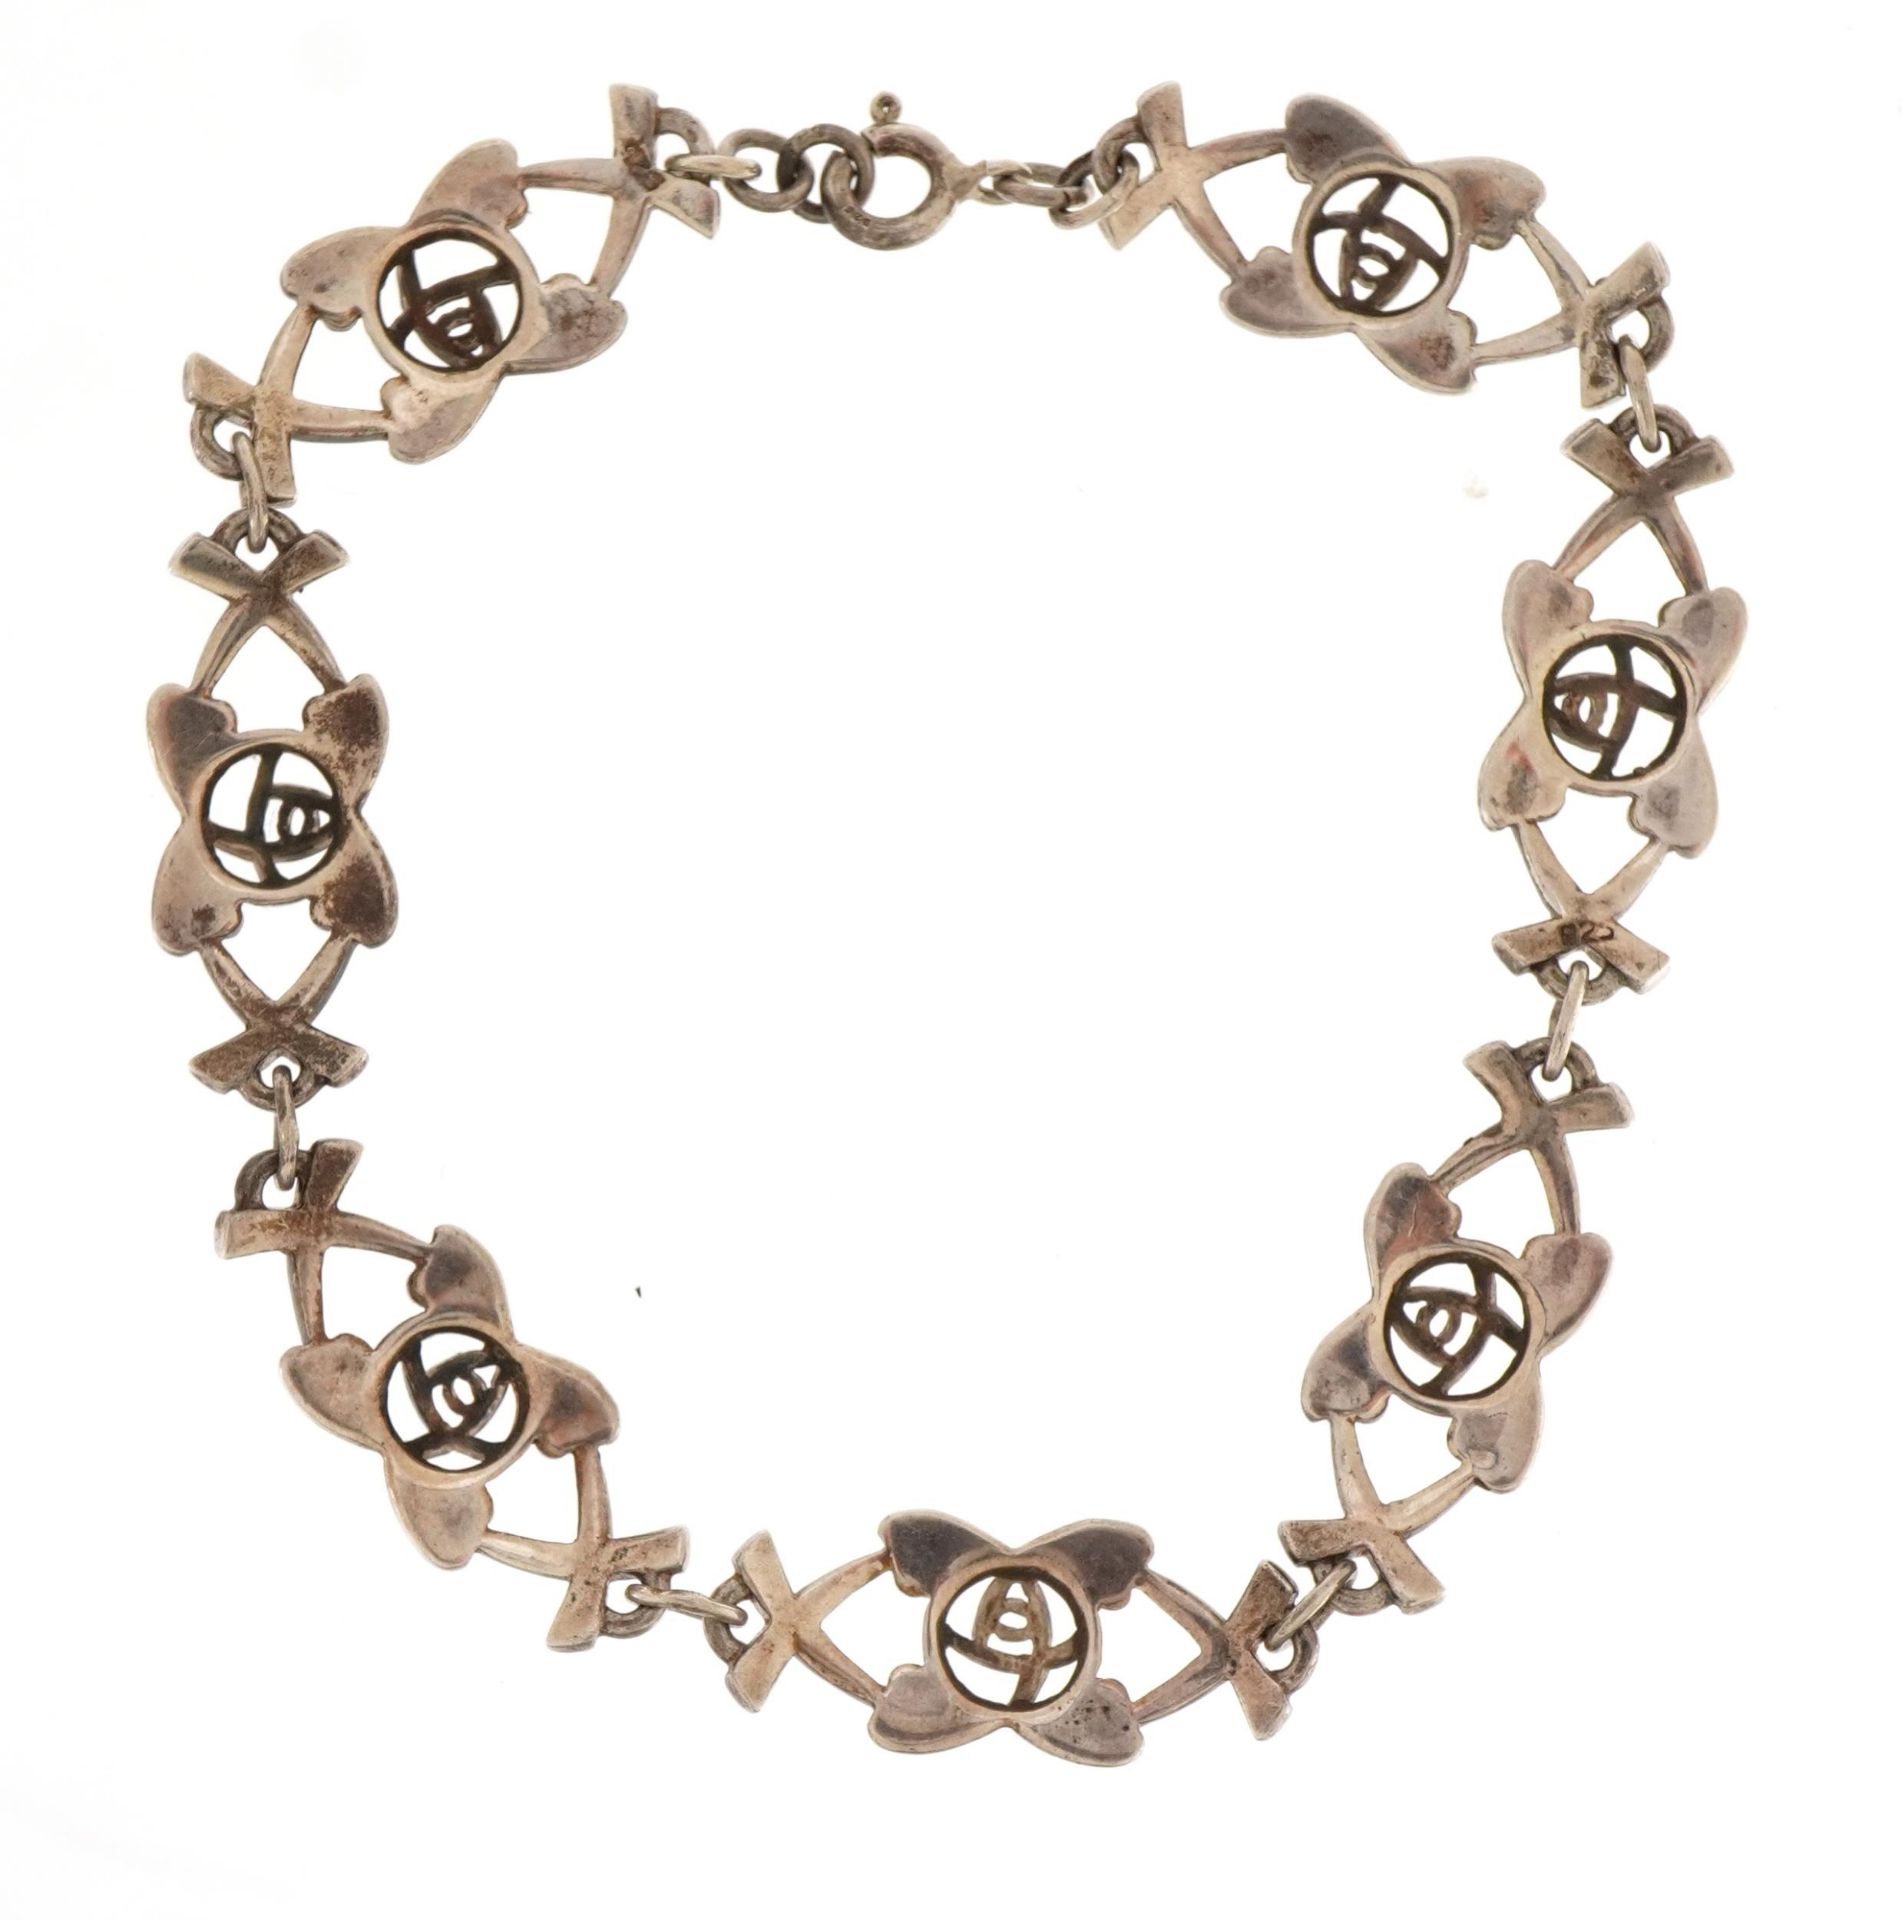 Stylish silver rose design bracelet stamped 925, 18cm in length, 12g - Image 3 of 3